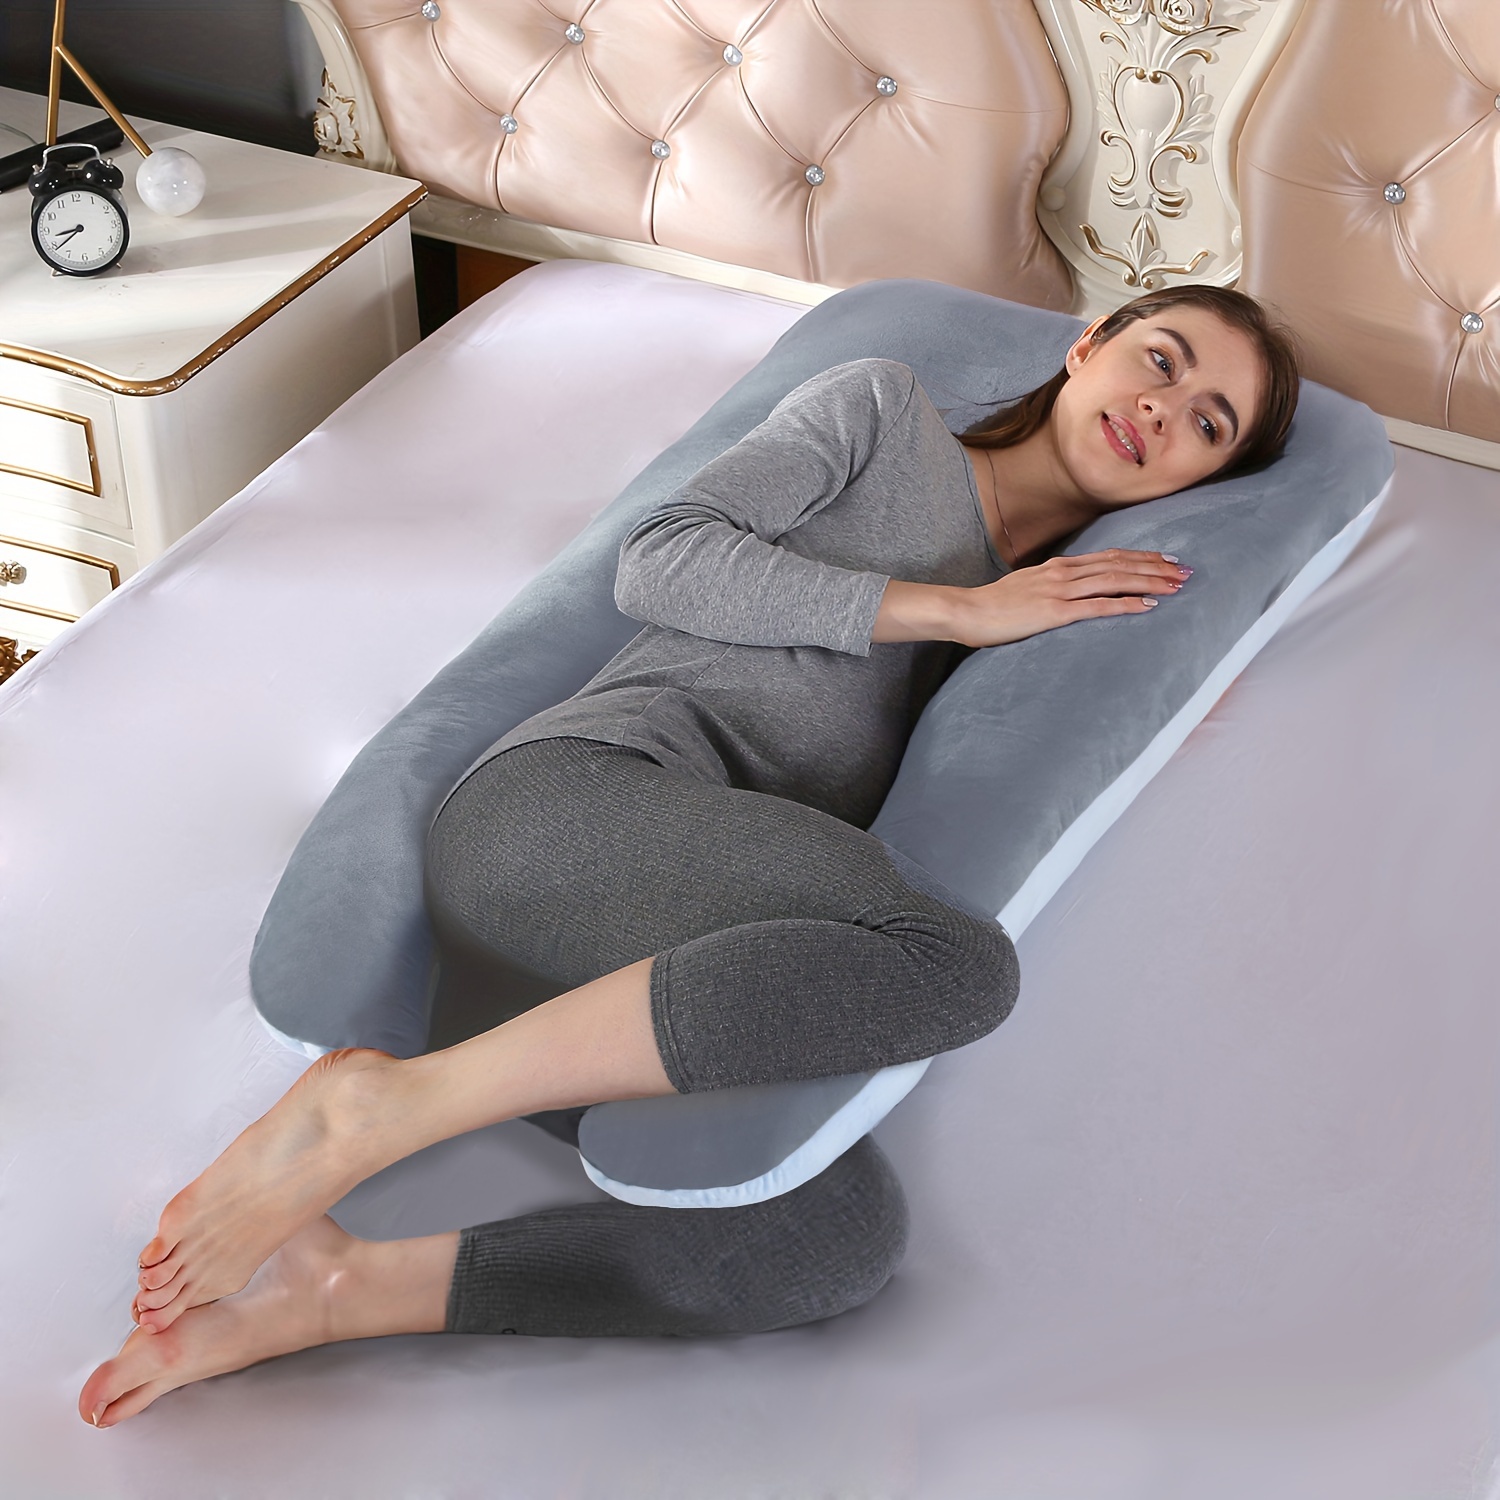 Comfort Lumbar Support Pillow Sleep Cushion Waist Pad Relaxing Spine  Sleeping Semicircular Lower Back Support Cushion - Pillow - AliExpress